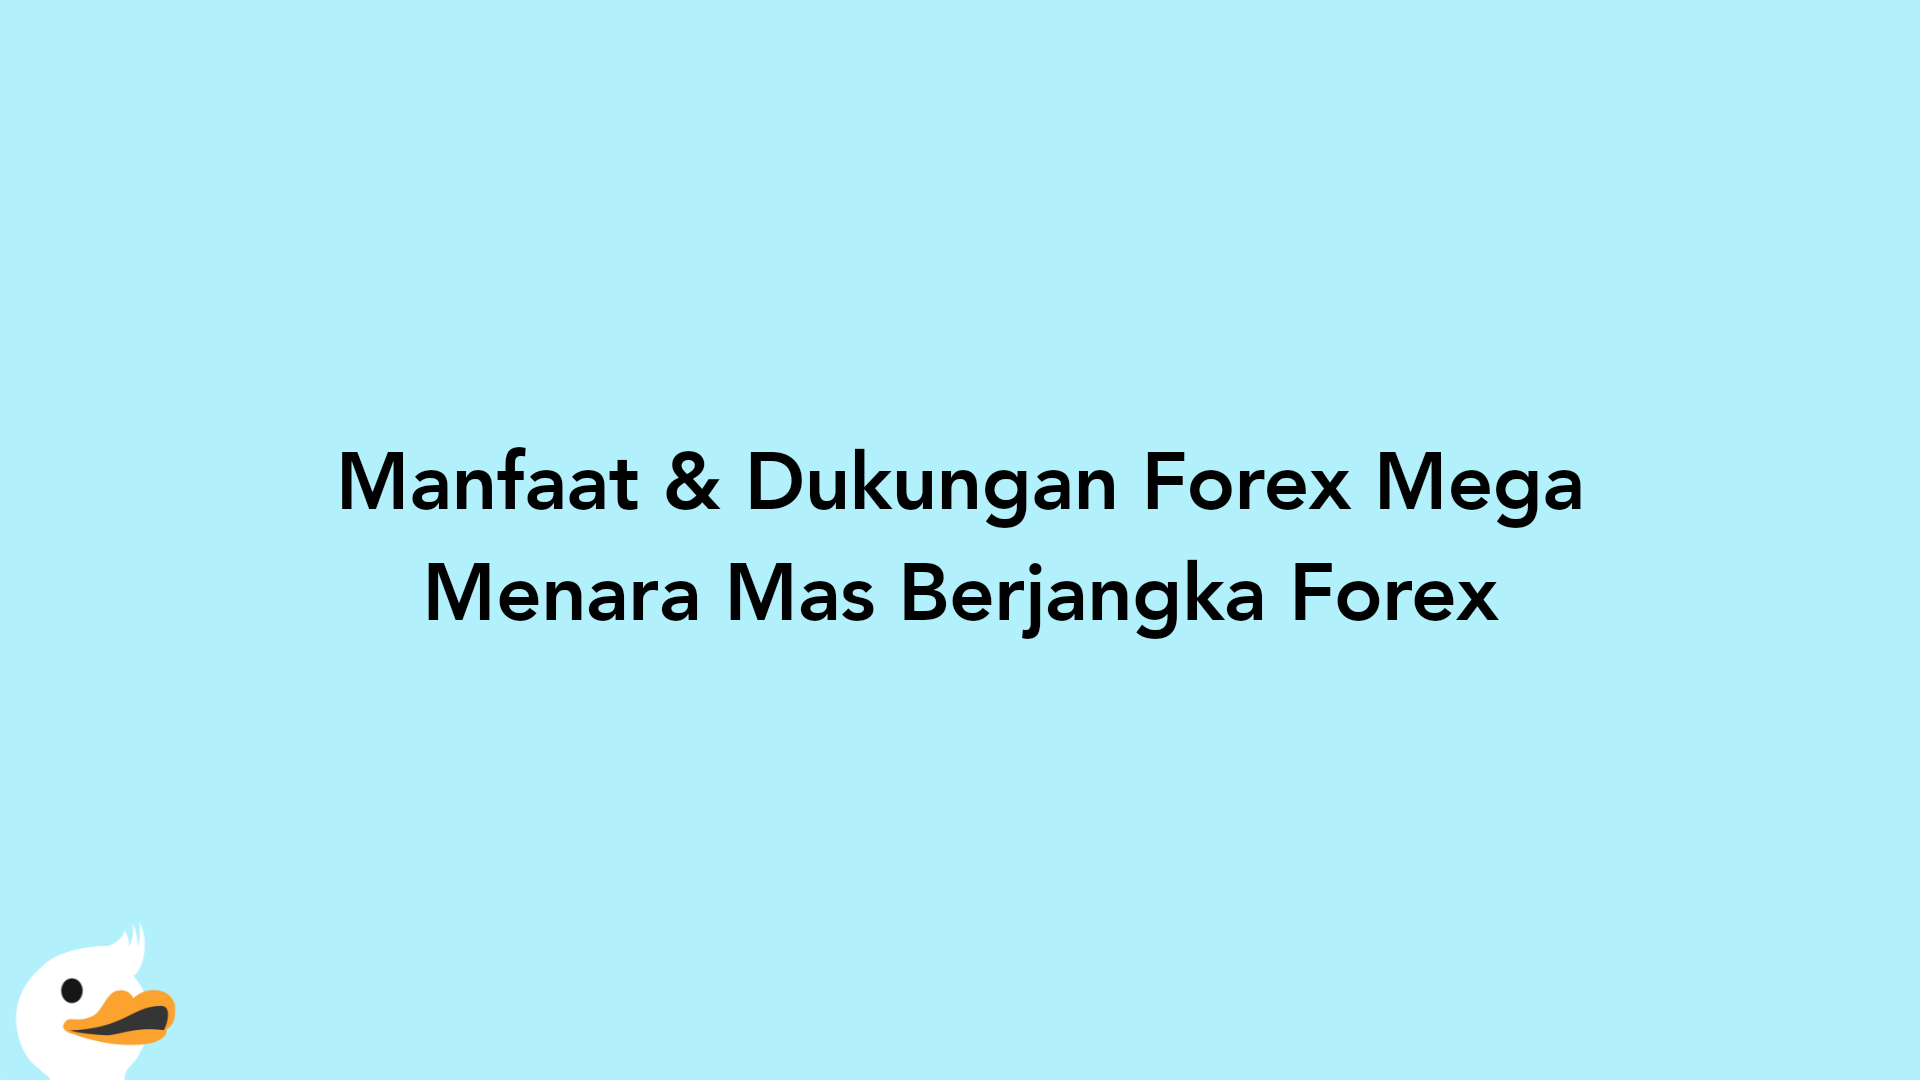 Manfaat & Dukungan Forex Mega Menara Mas Berjangka Forex